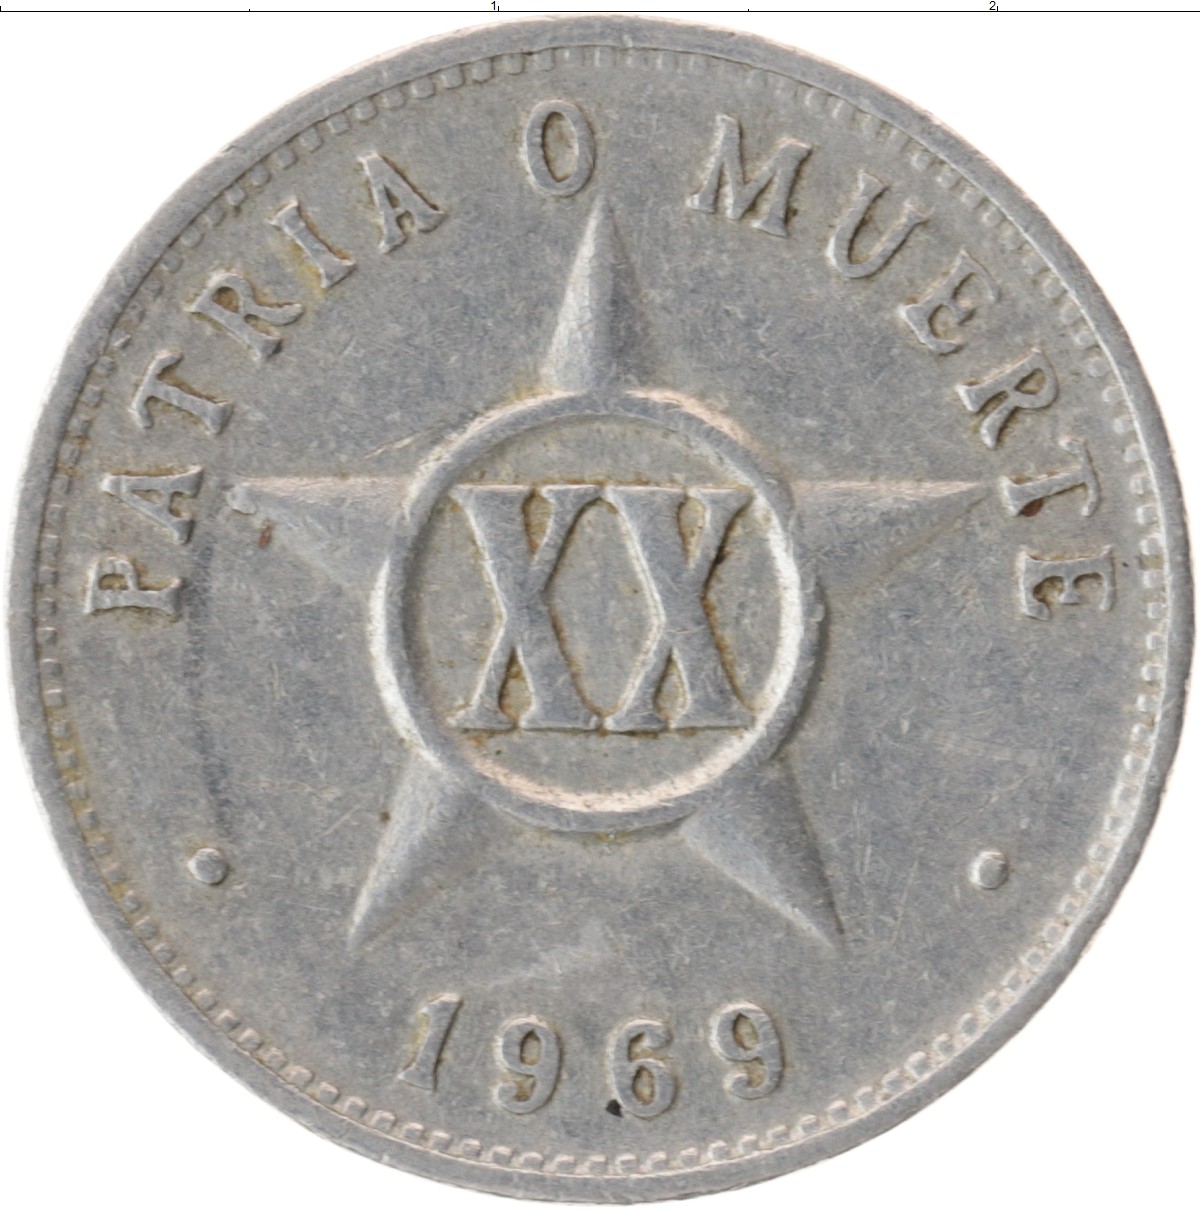 Кубинская монета. Кубинские монеты 20 сентаво. Diez centavos Кубинская монета. Кубинская монета 20 сентаво 1961 года. Монета Кубы 1969.